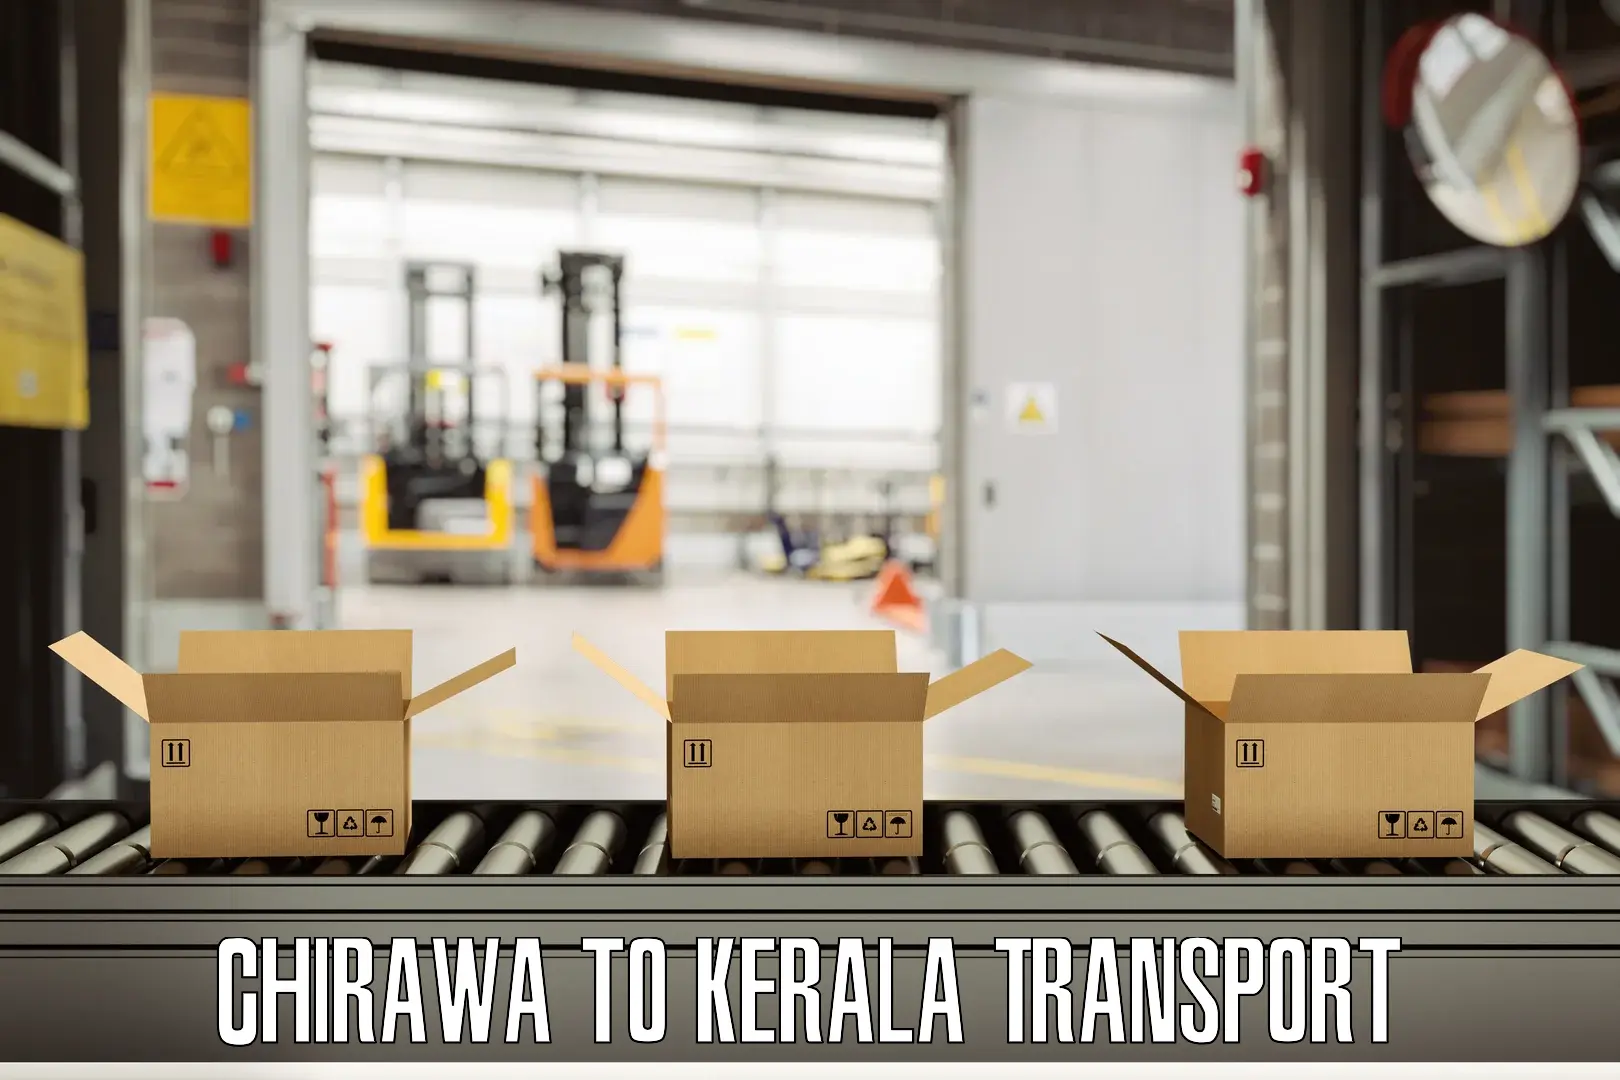 Transport in sharing Chirawa to Kunnamkulam